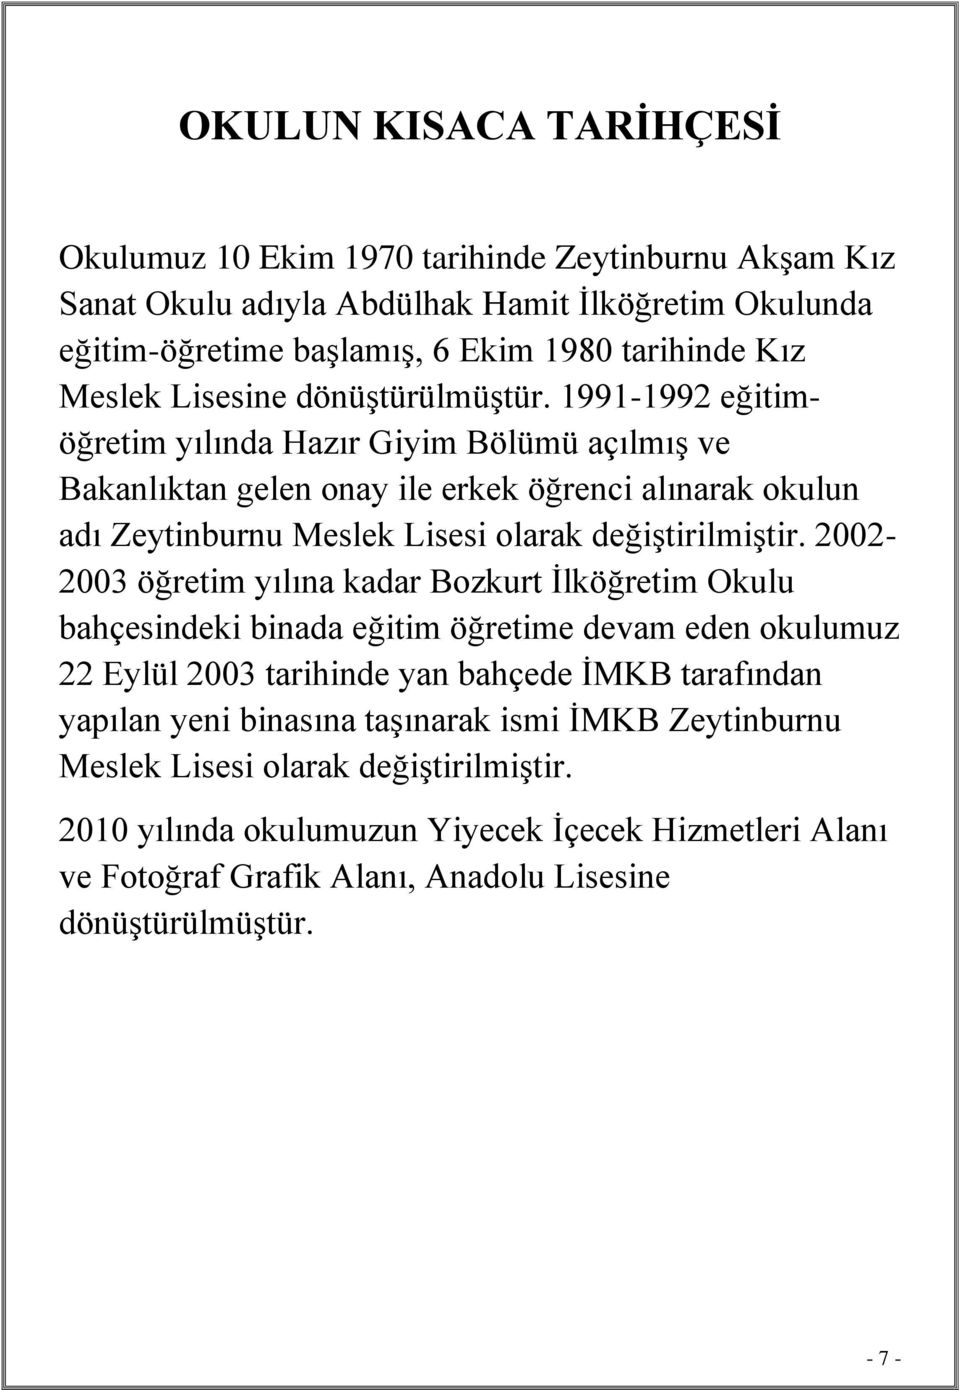 1991-1992 eğitimöğretim yılında Hazır Giyim Bölümü açılmış ve Bakanlıktan gelen onay ile erkek öğrenci alınarak okulun adı Zeytinburnu Meslek Lisesi olarak değiştirilmiştir.